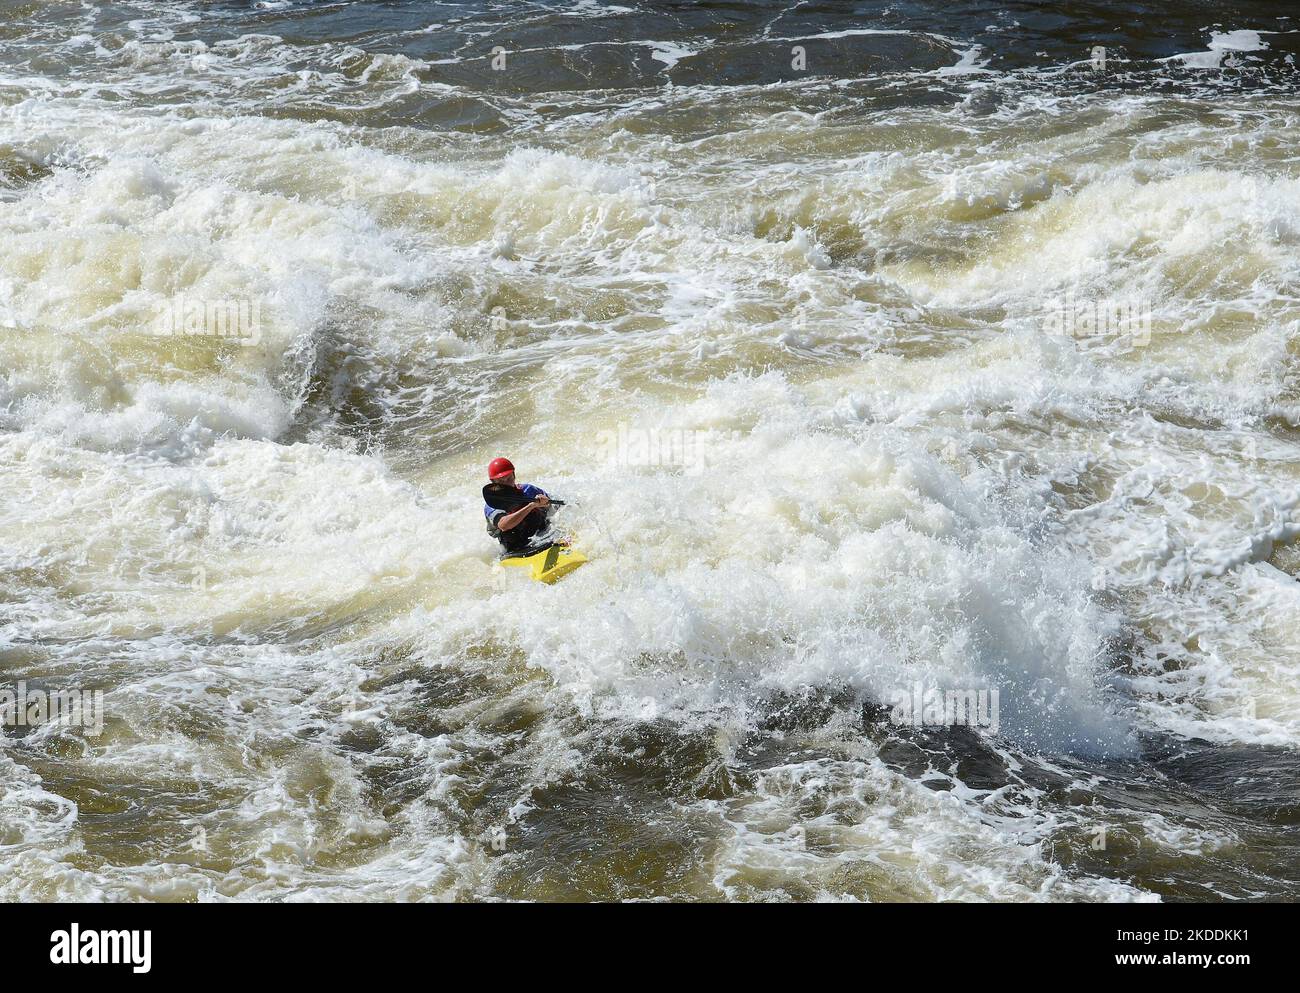 Kajakfahren in sehr rauen Stromschnellen. Der Fluss ist heftig mit vielen turbulenten Wellen und Spray. Das Gesicht der Person im Kajak ist nicht erkennbar. Stockfoto